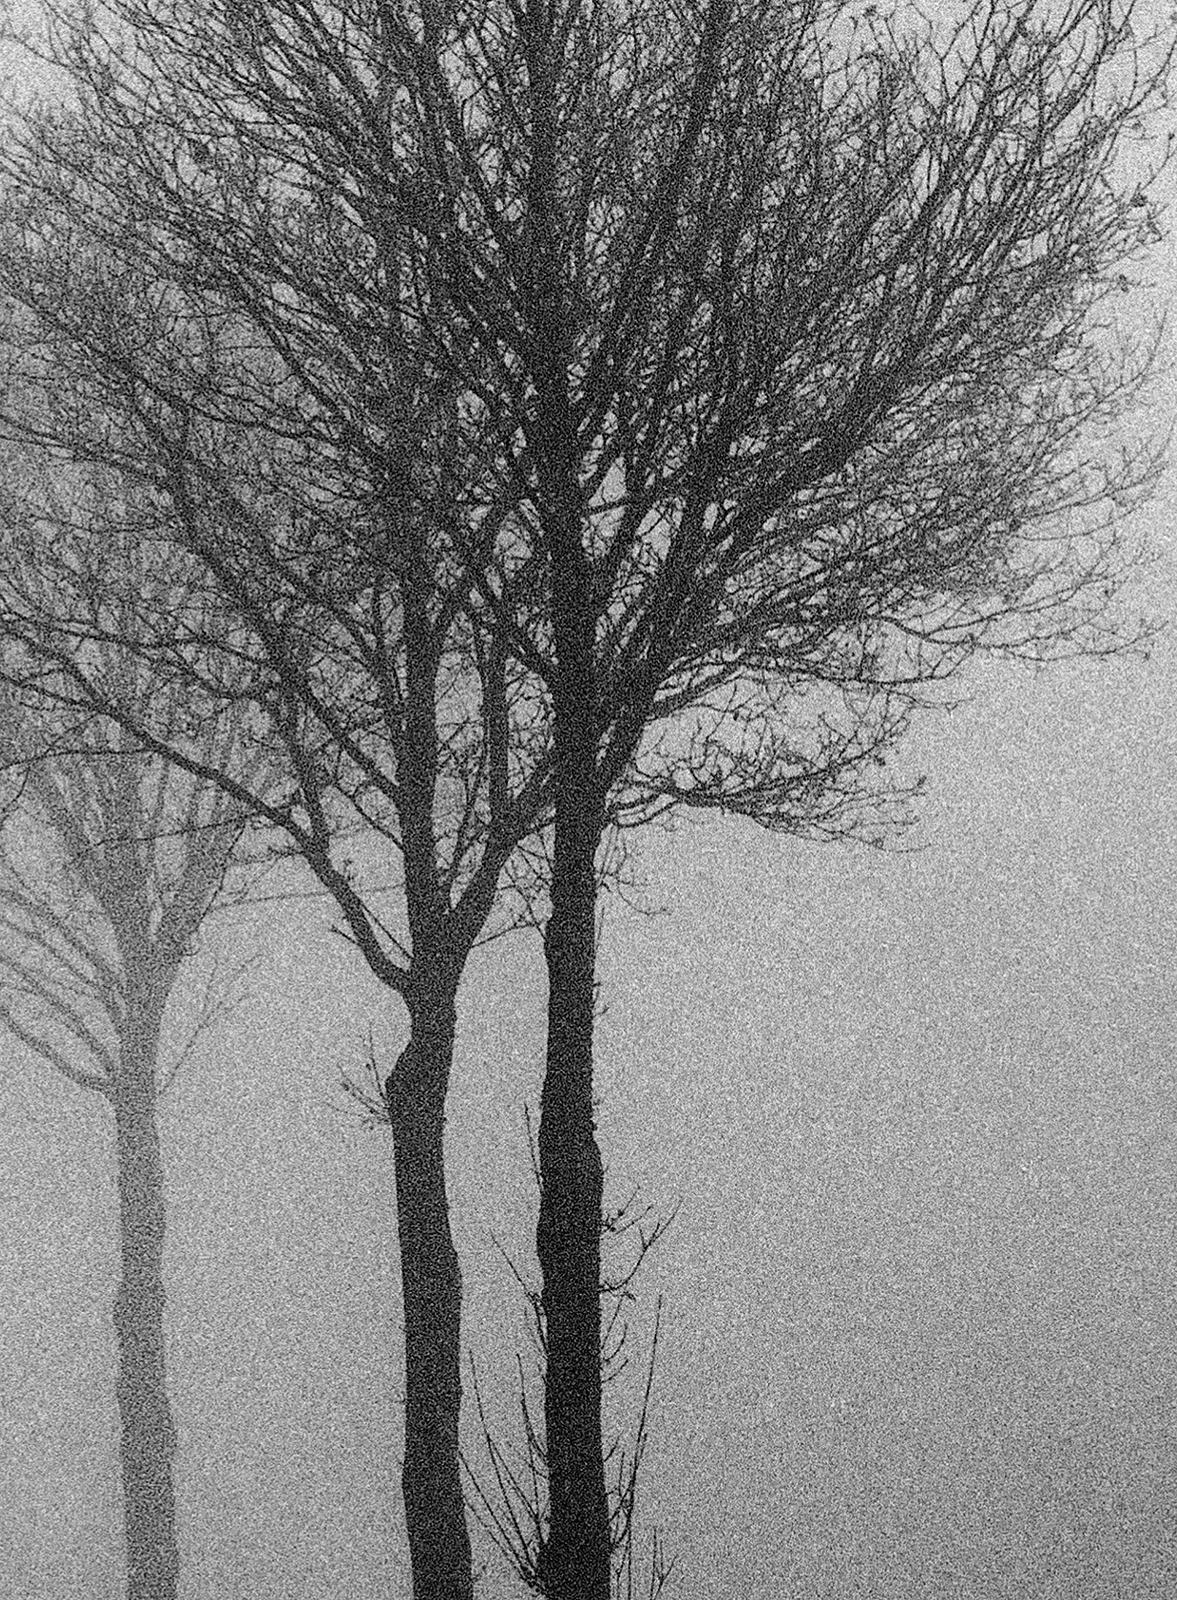 3 Bäume – signierter Naturdruck in limitierter Auflage, Schwarz-Weiß-Foto, Baum im Nebel  – Photograph von Ian Sanderson